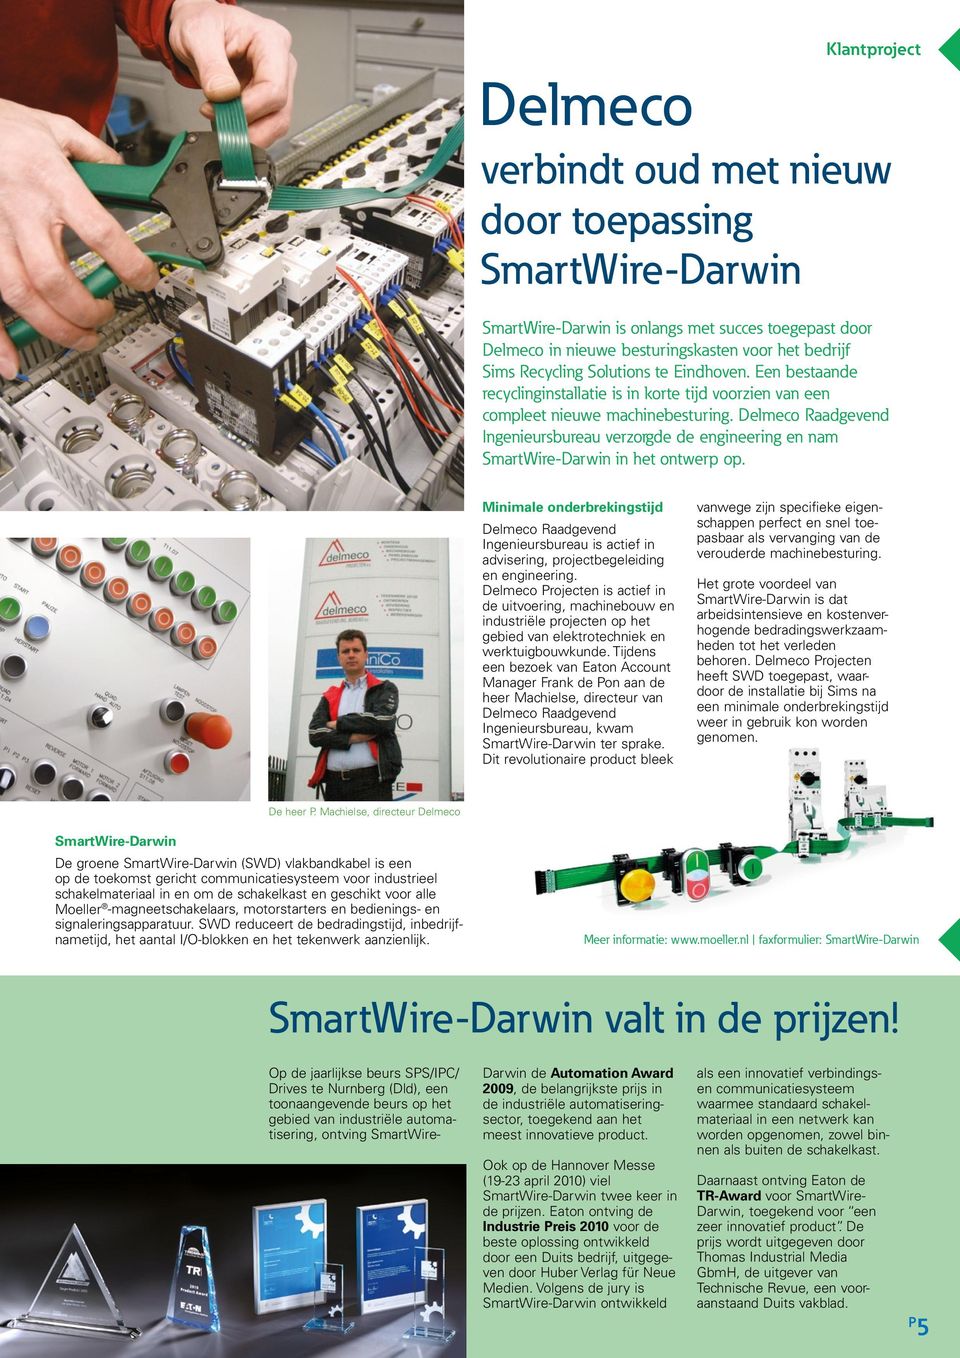 Delmeco Raadgevend Ingenieursbureau verzorgde de engineering en nam SmartWire-Darwin in het ontwerp op.